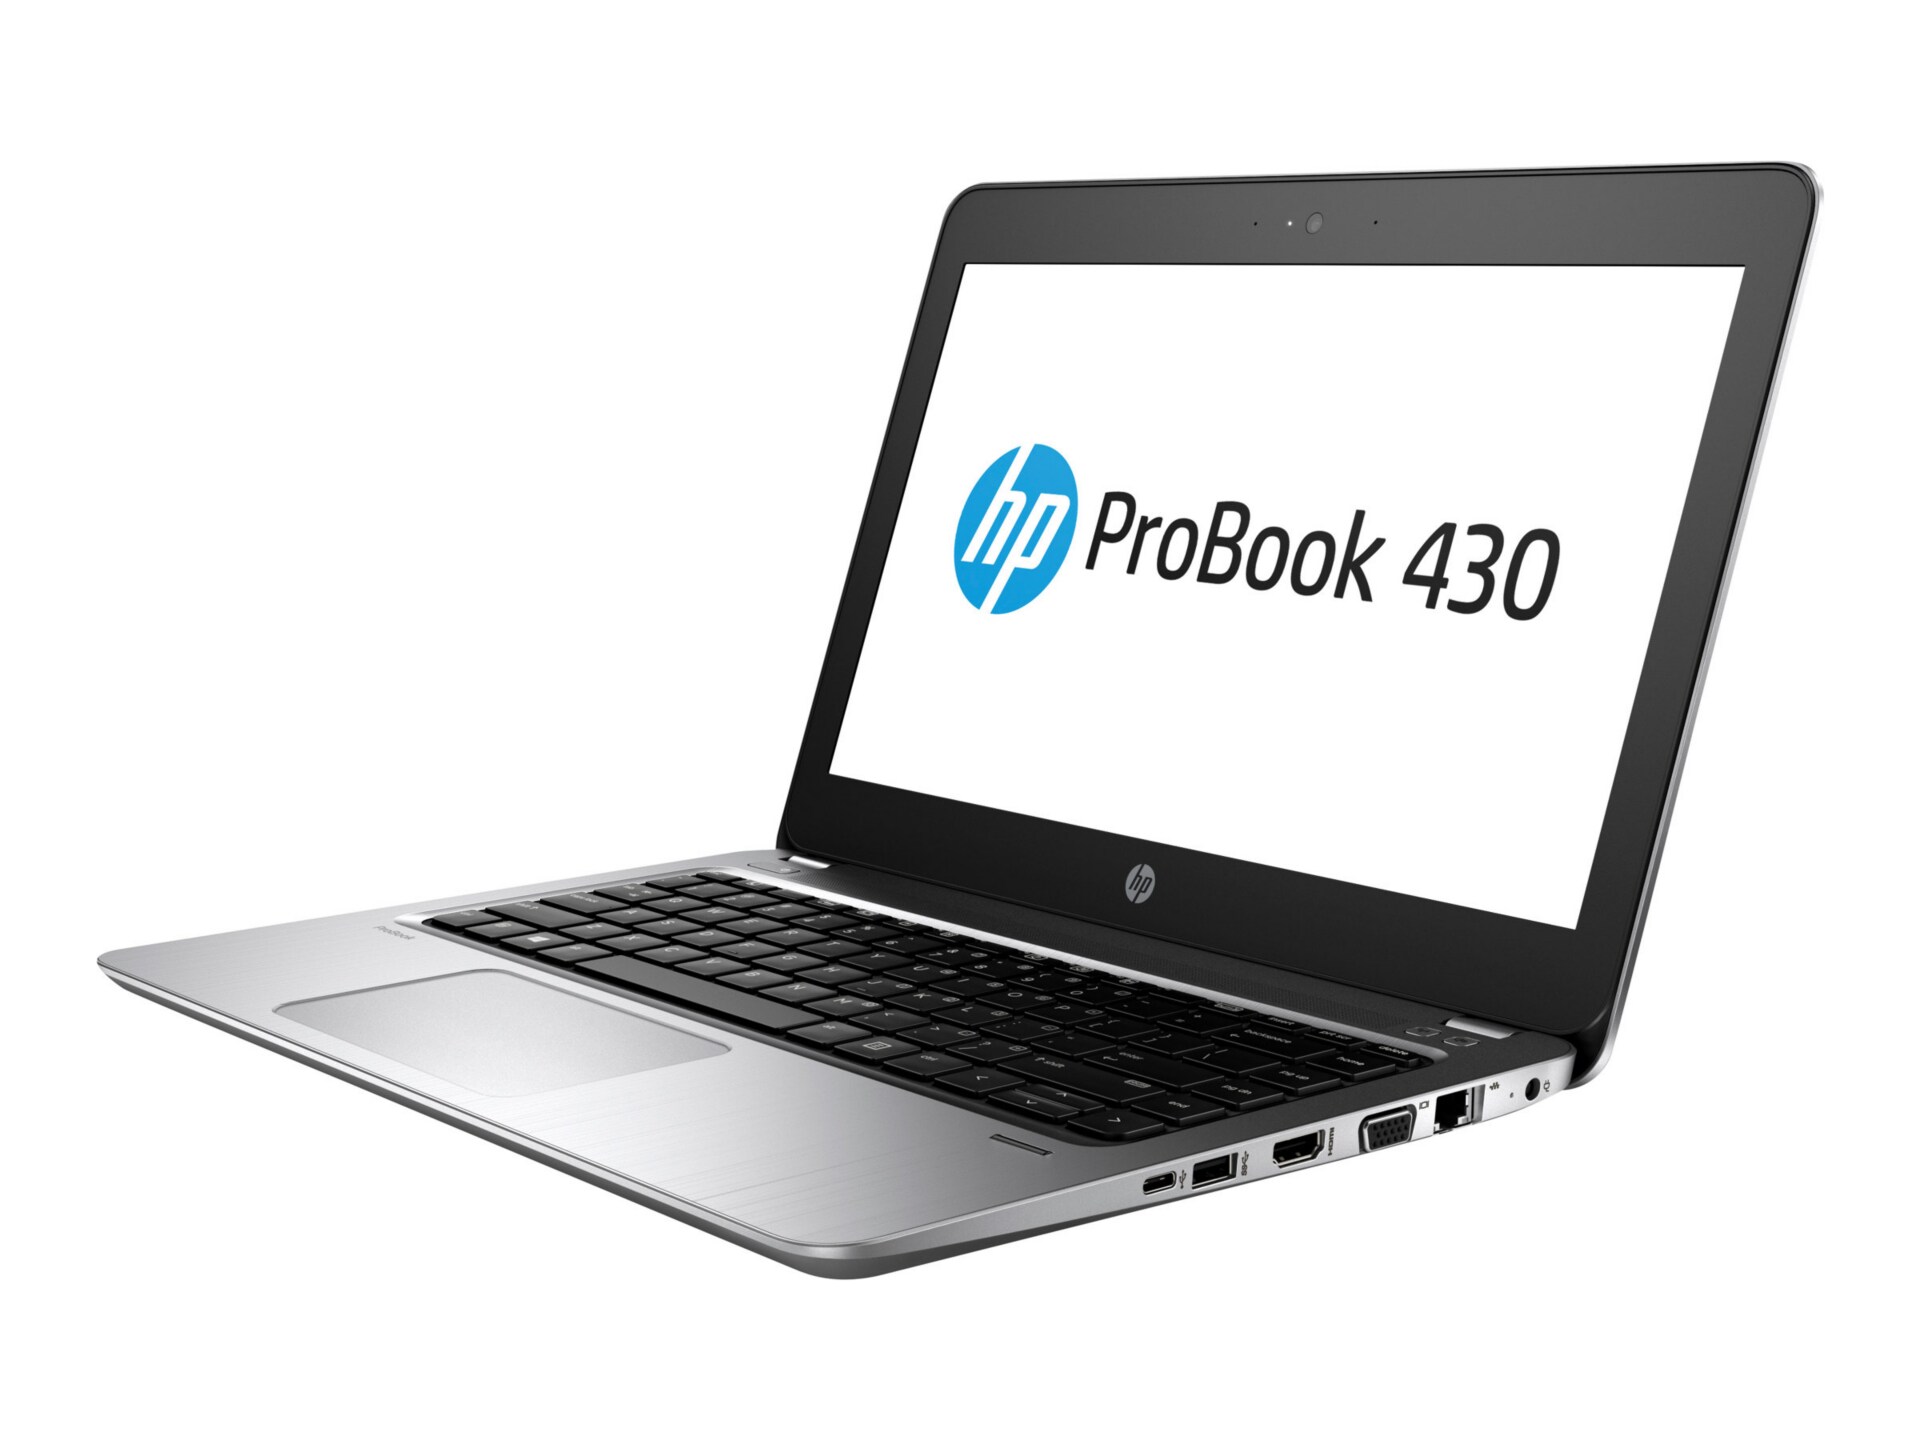 HP ProBook 430 G4 - 13.3" - Core i7 7500U - 16 GB RAM - 256 GB SSD - US